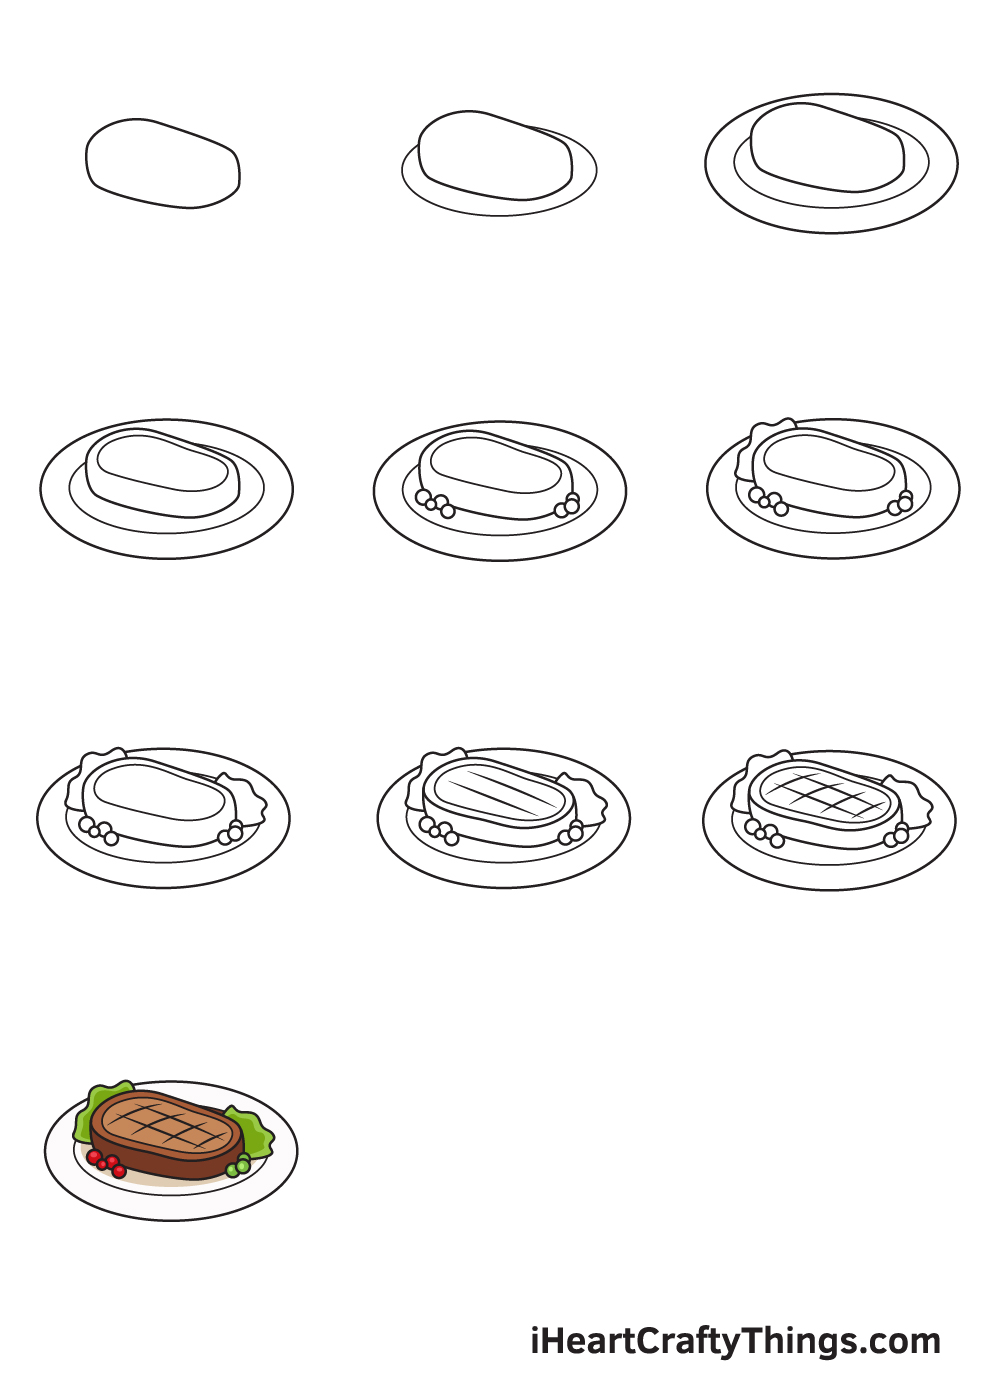 Drawing Food in 10 Easy Steps - Hướng dẫn cách vẽ đồ ăn đơn giản với 9 bước cơ bản